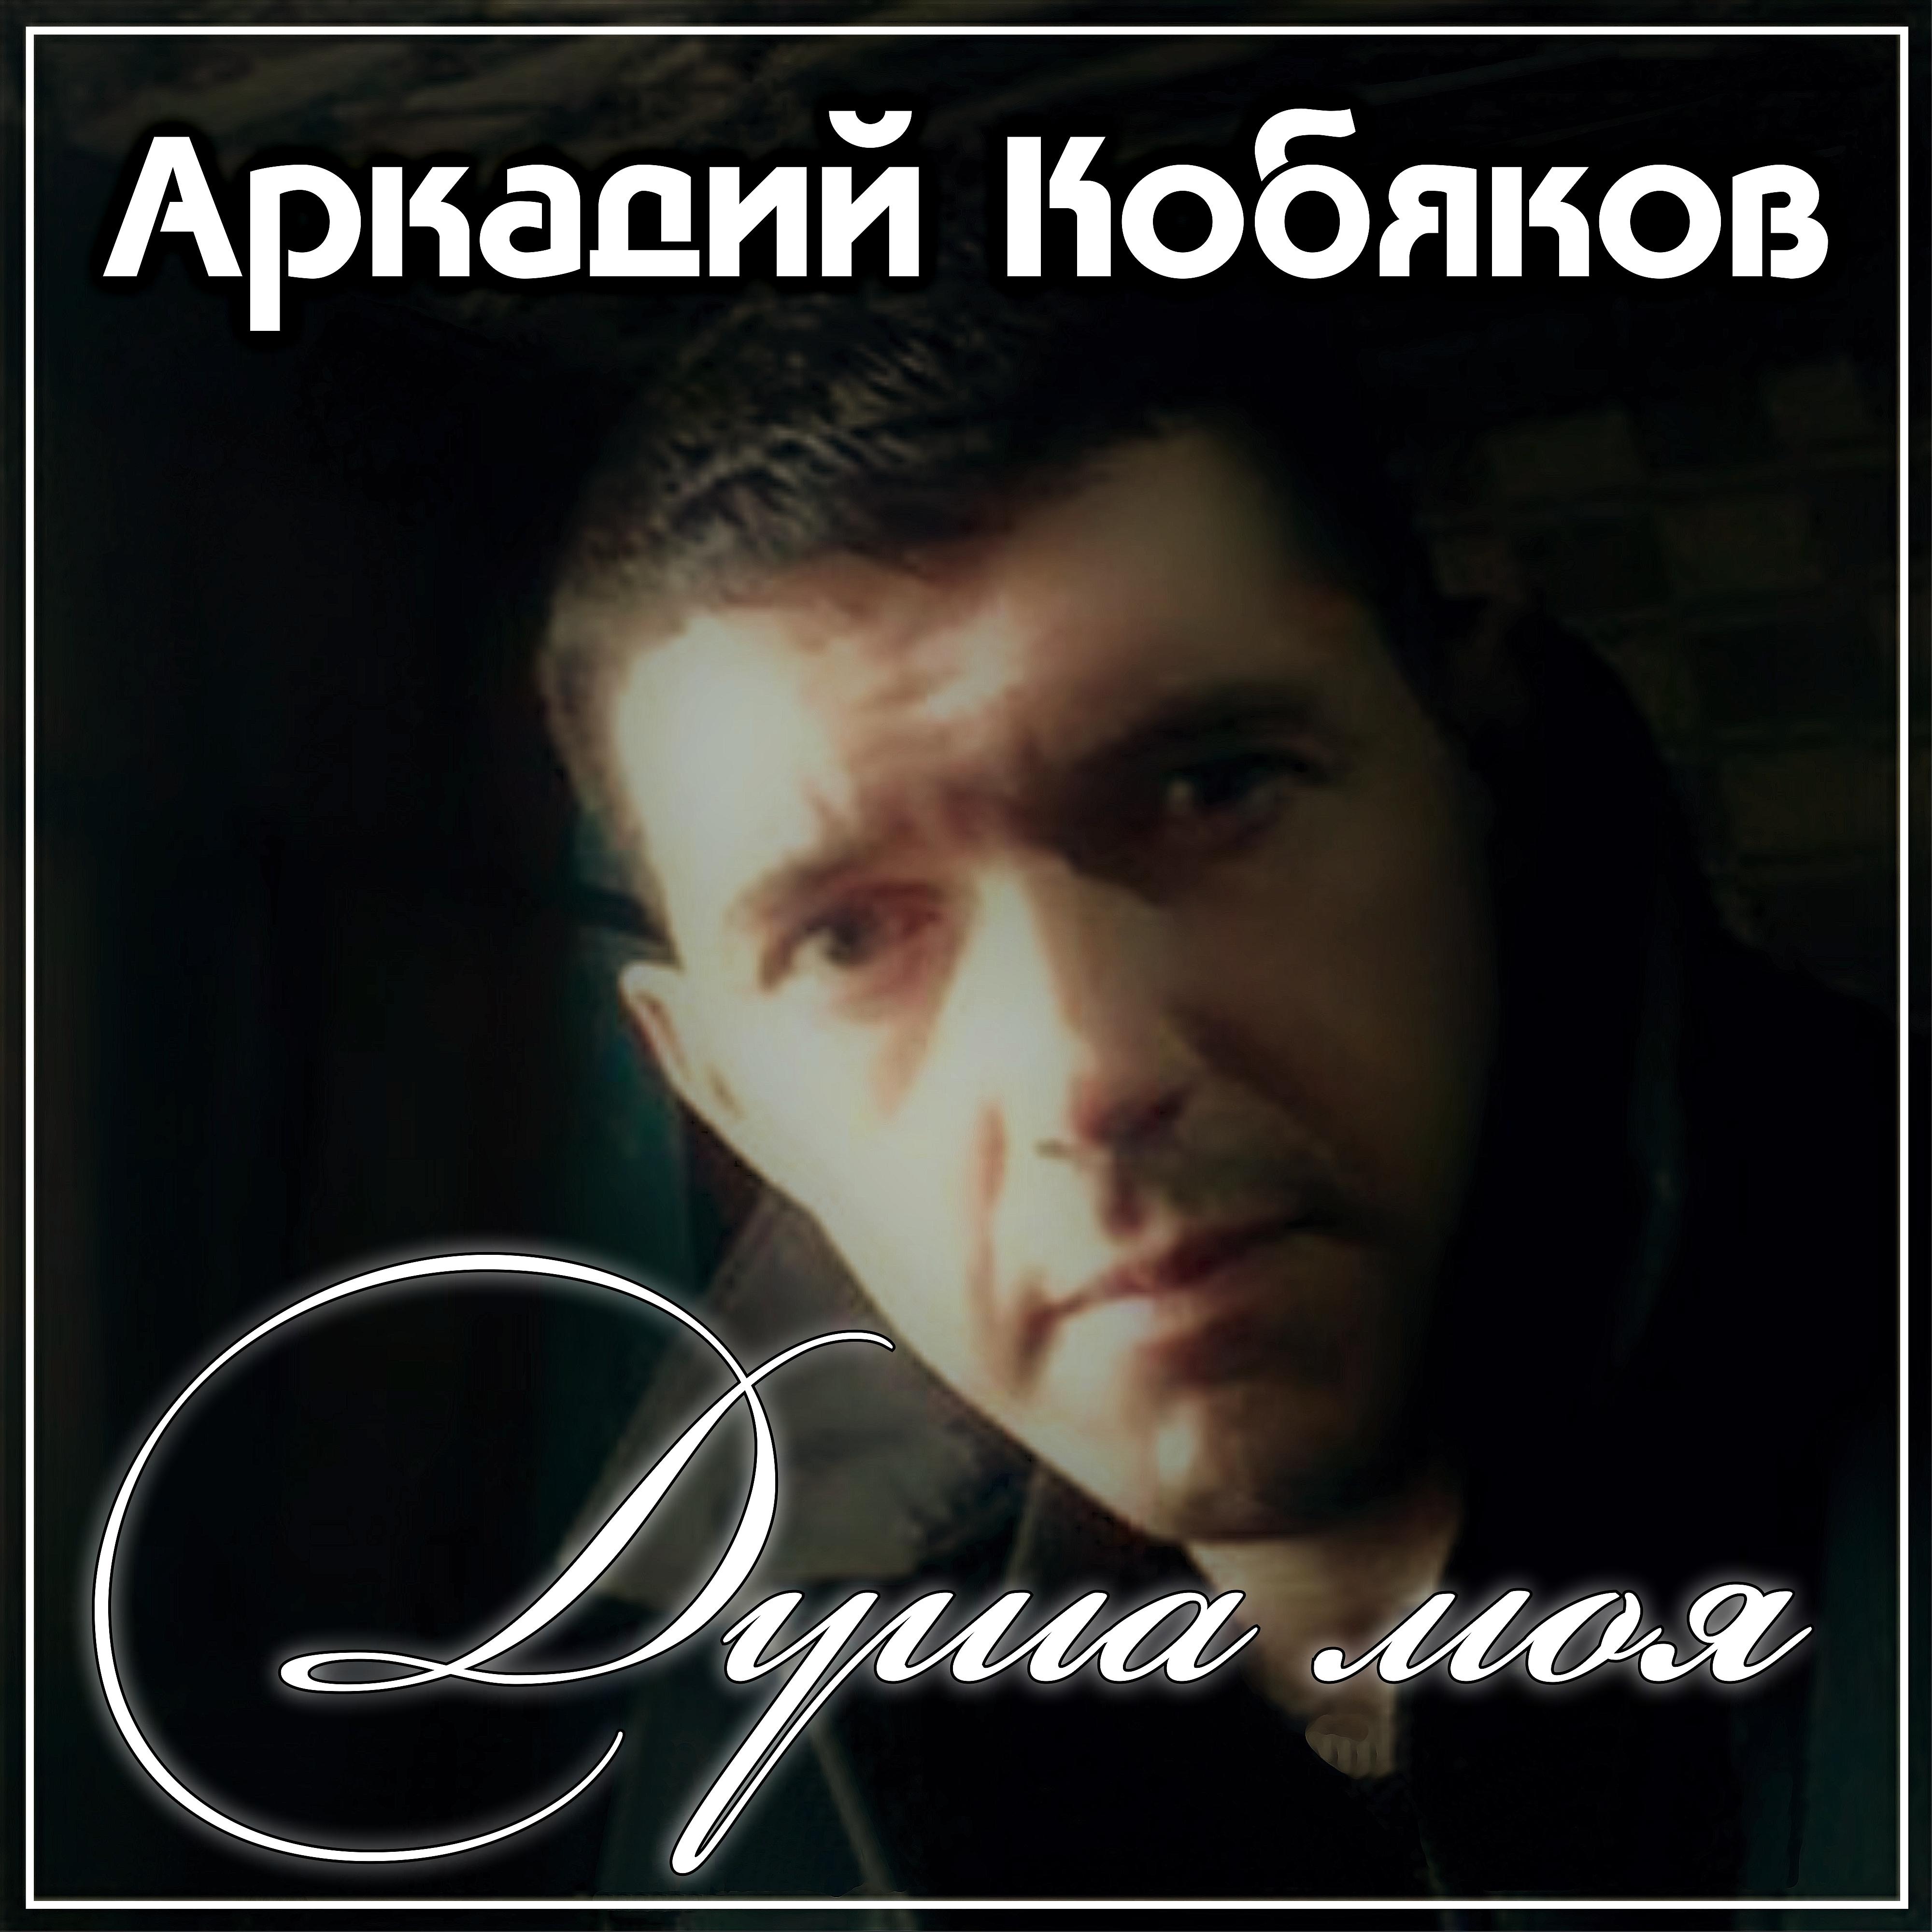 Кобяков в 2012. 4 песни кобякова